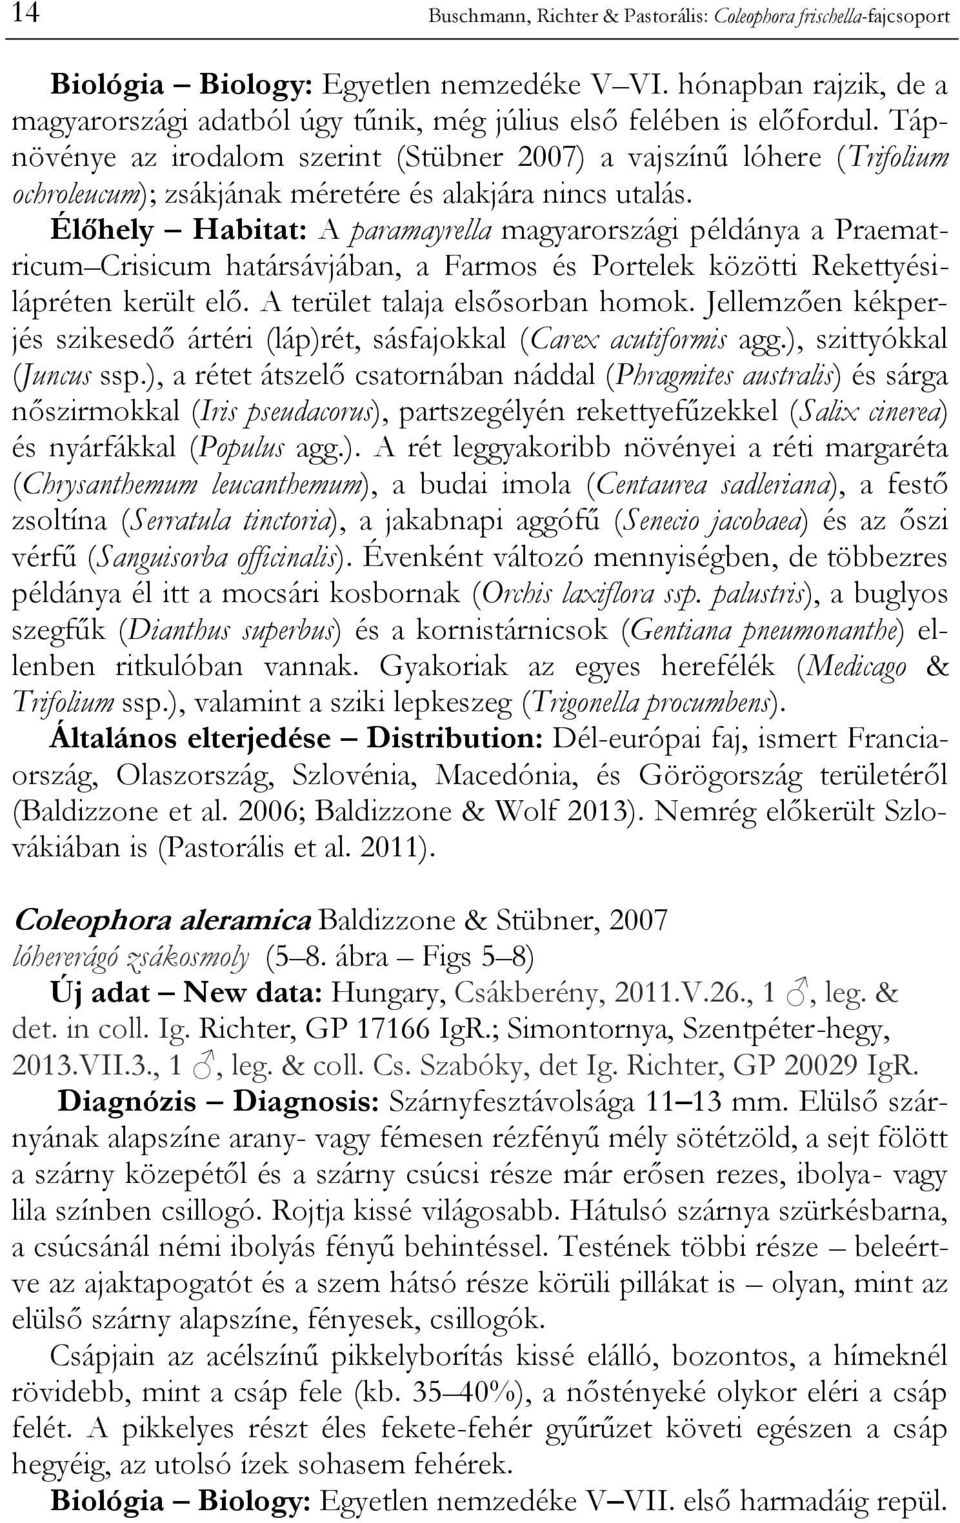 Tápnövénye az irodalom szerint (Stübner 2007) a vajszínű lóhere (Trifolium ochroleucum); zsákjának méretére és alakjára nincs utalás.